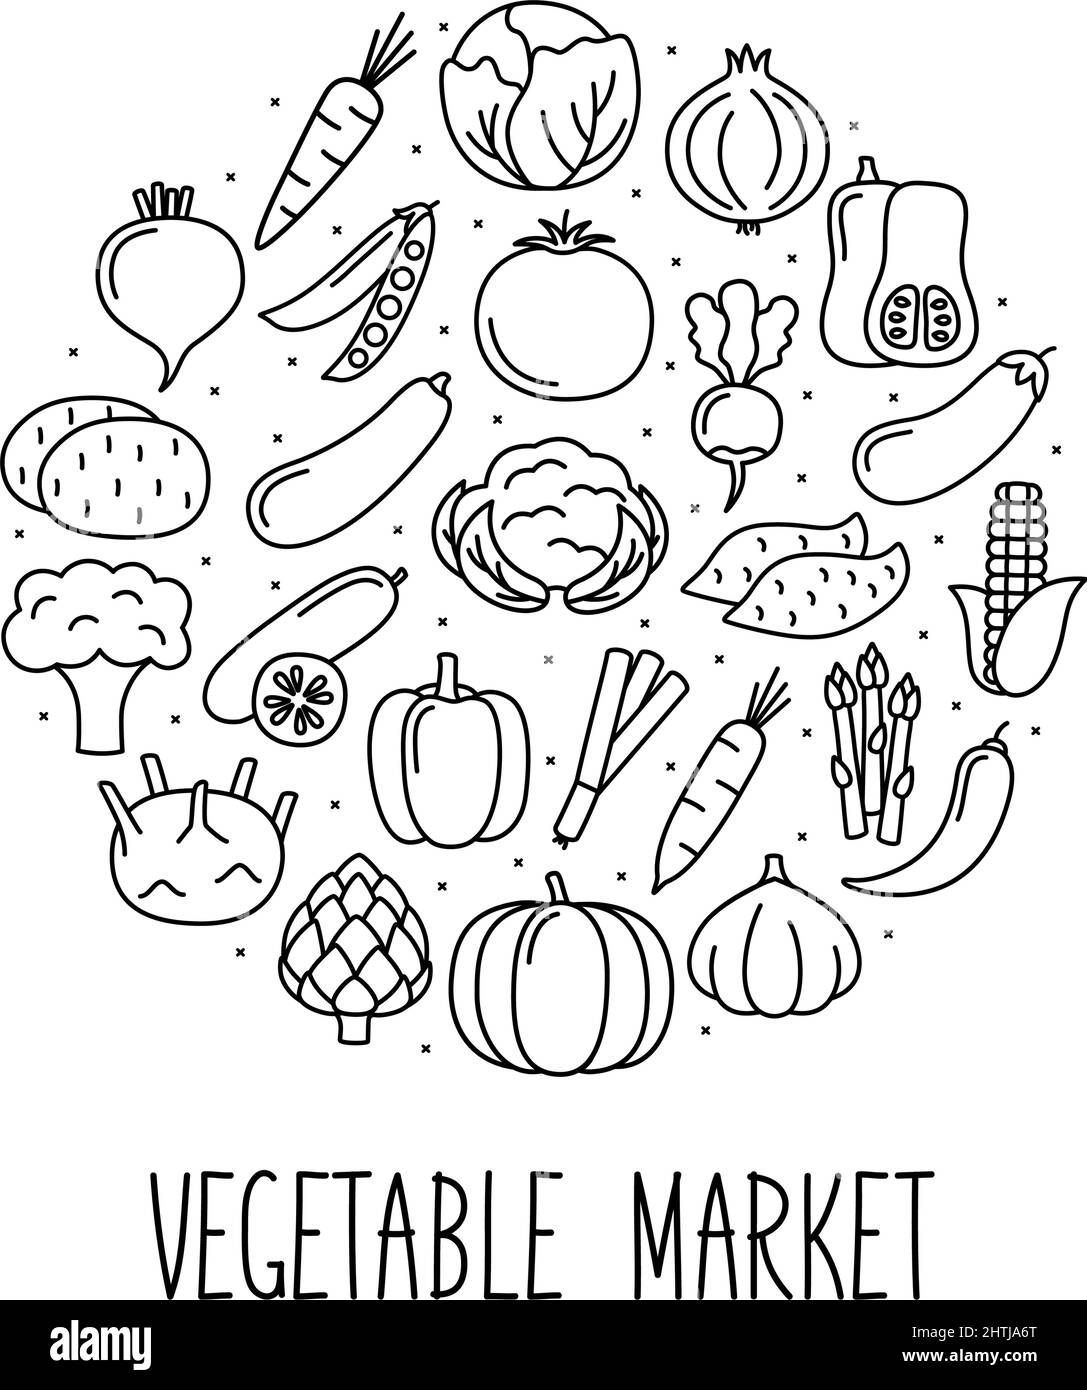 Rundes Banner mit Gemüse-Symbolen im linearen Stil. Design für Markt und Geschäft, Vektorgrafik Stock Vektor